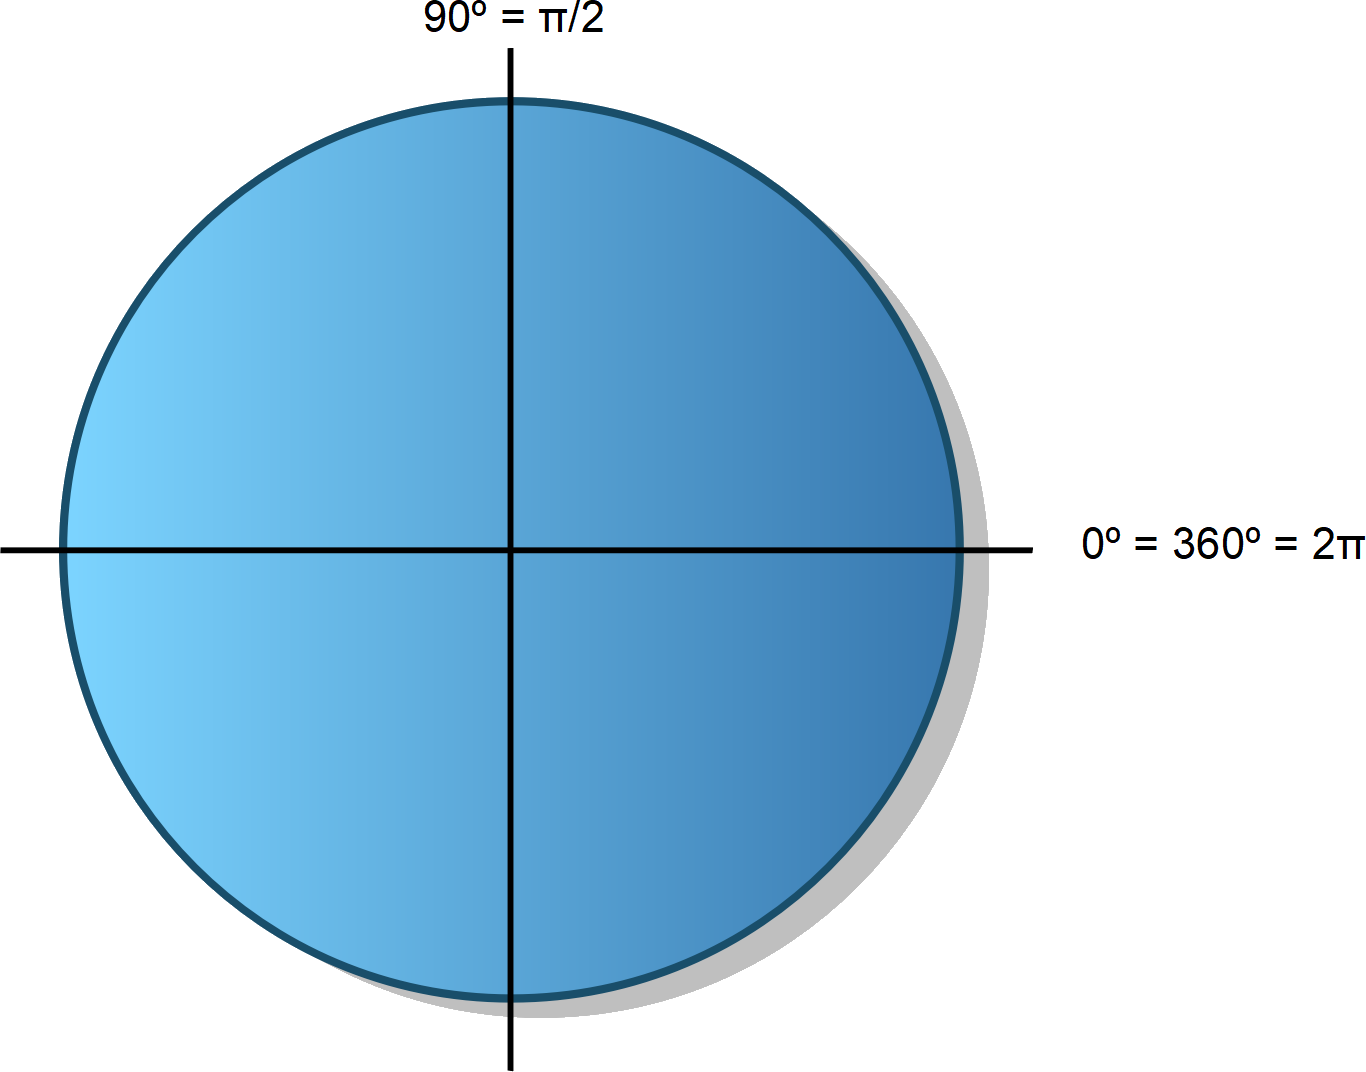 La imagen muestra una circunferencia goniométrica con grados y radianes